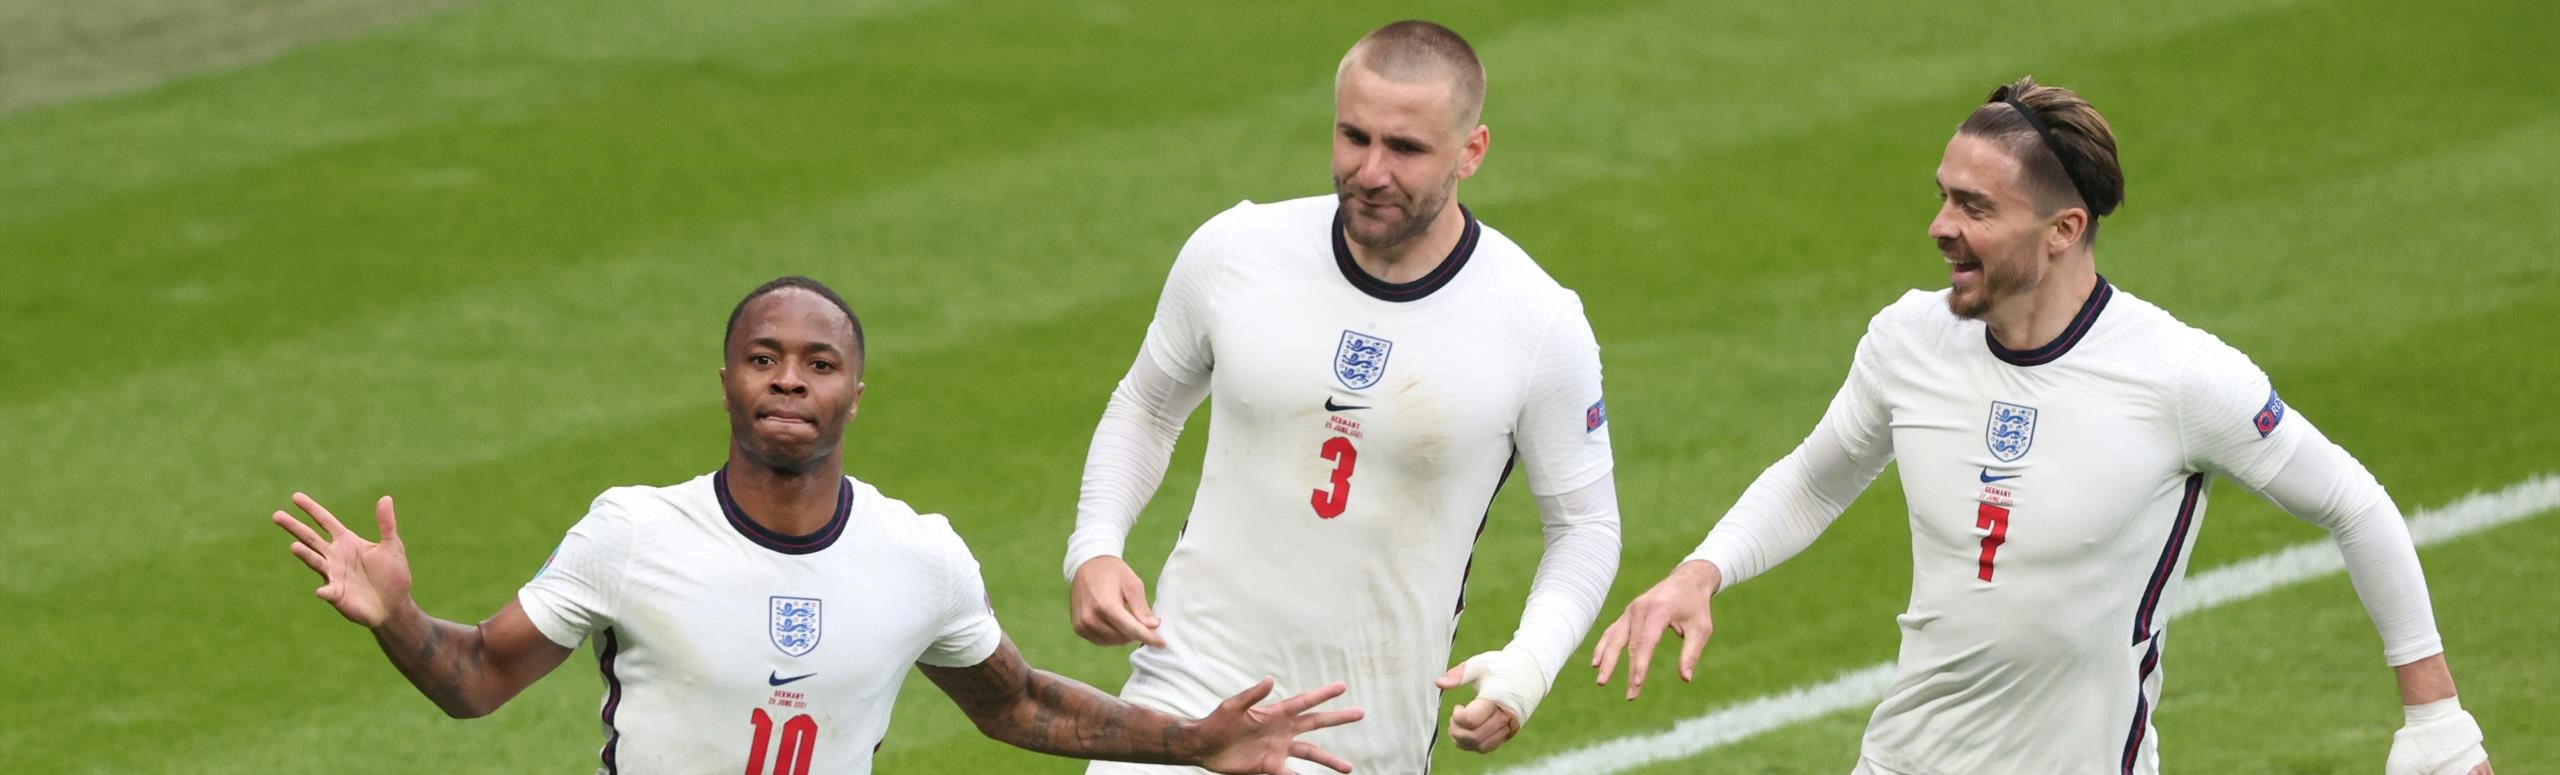 Англия победила сборную Германии и прошла в 1/4 финала Евро-2020